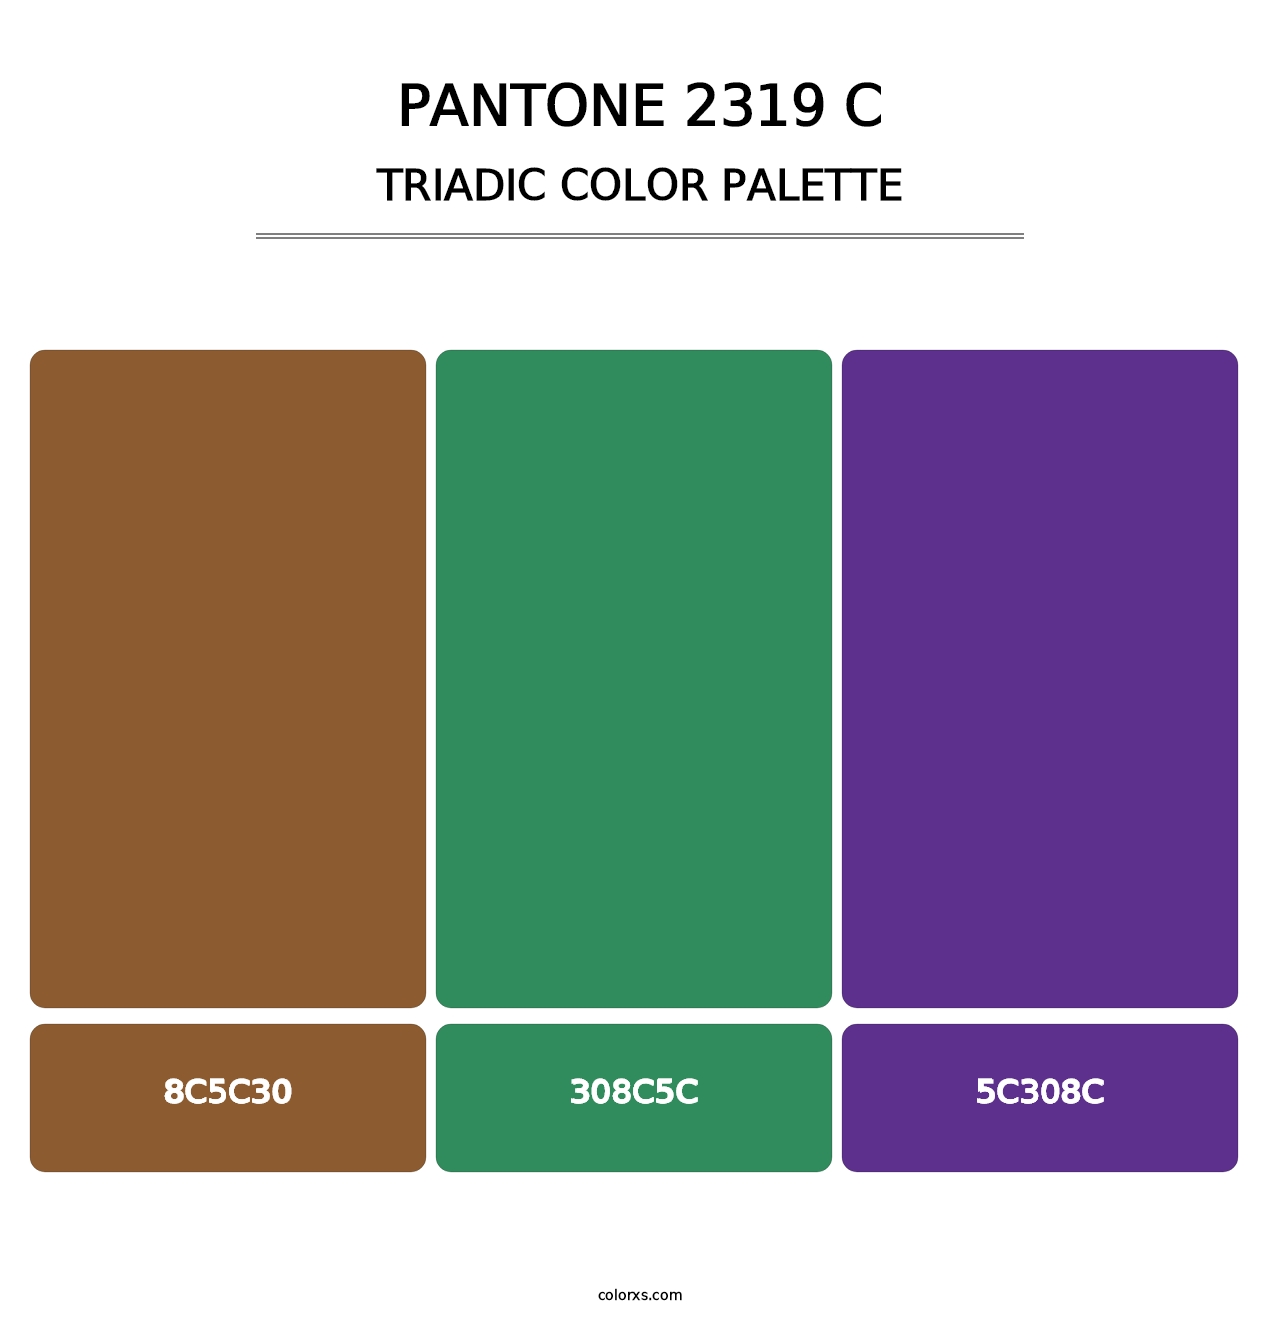 PANTONE 2319 C - Triadic Color Palette